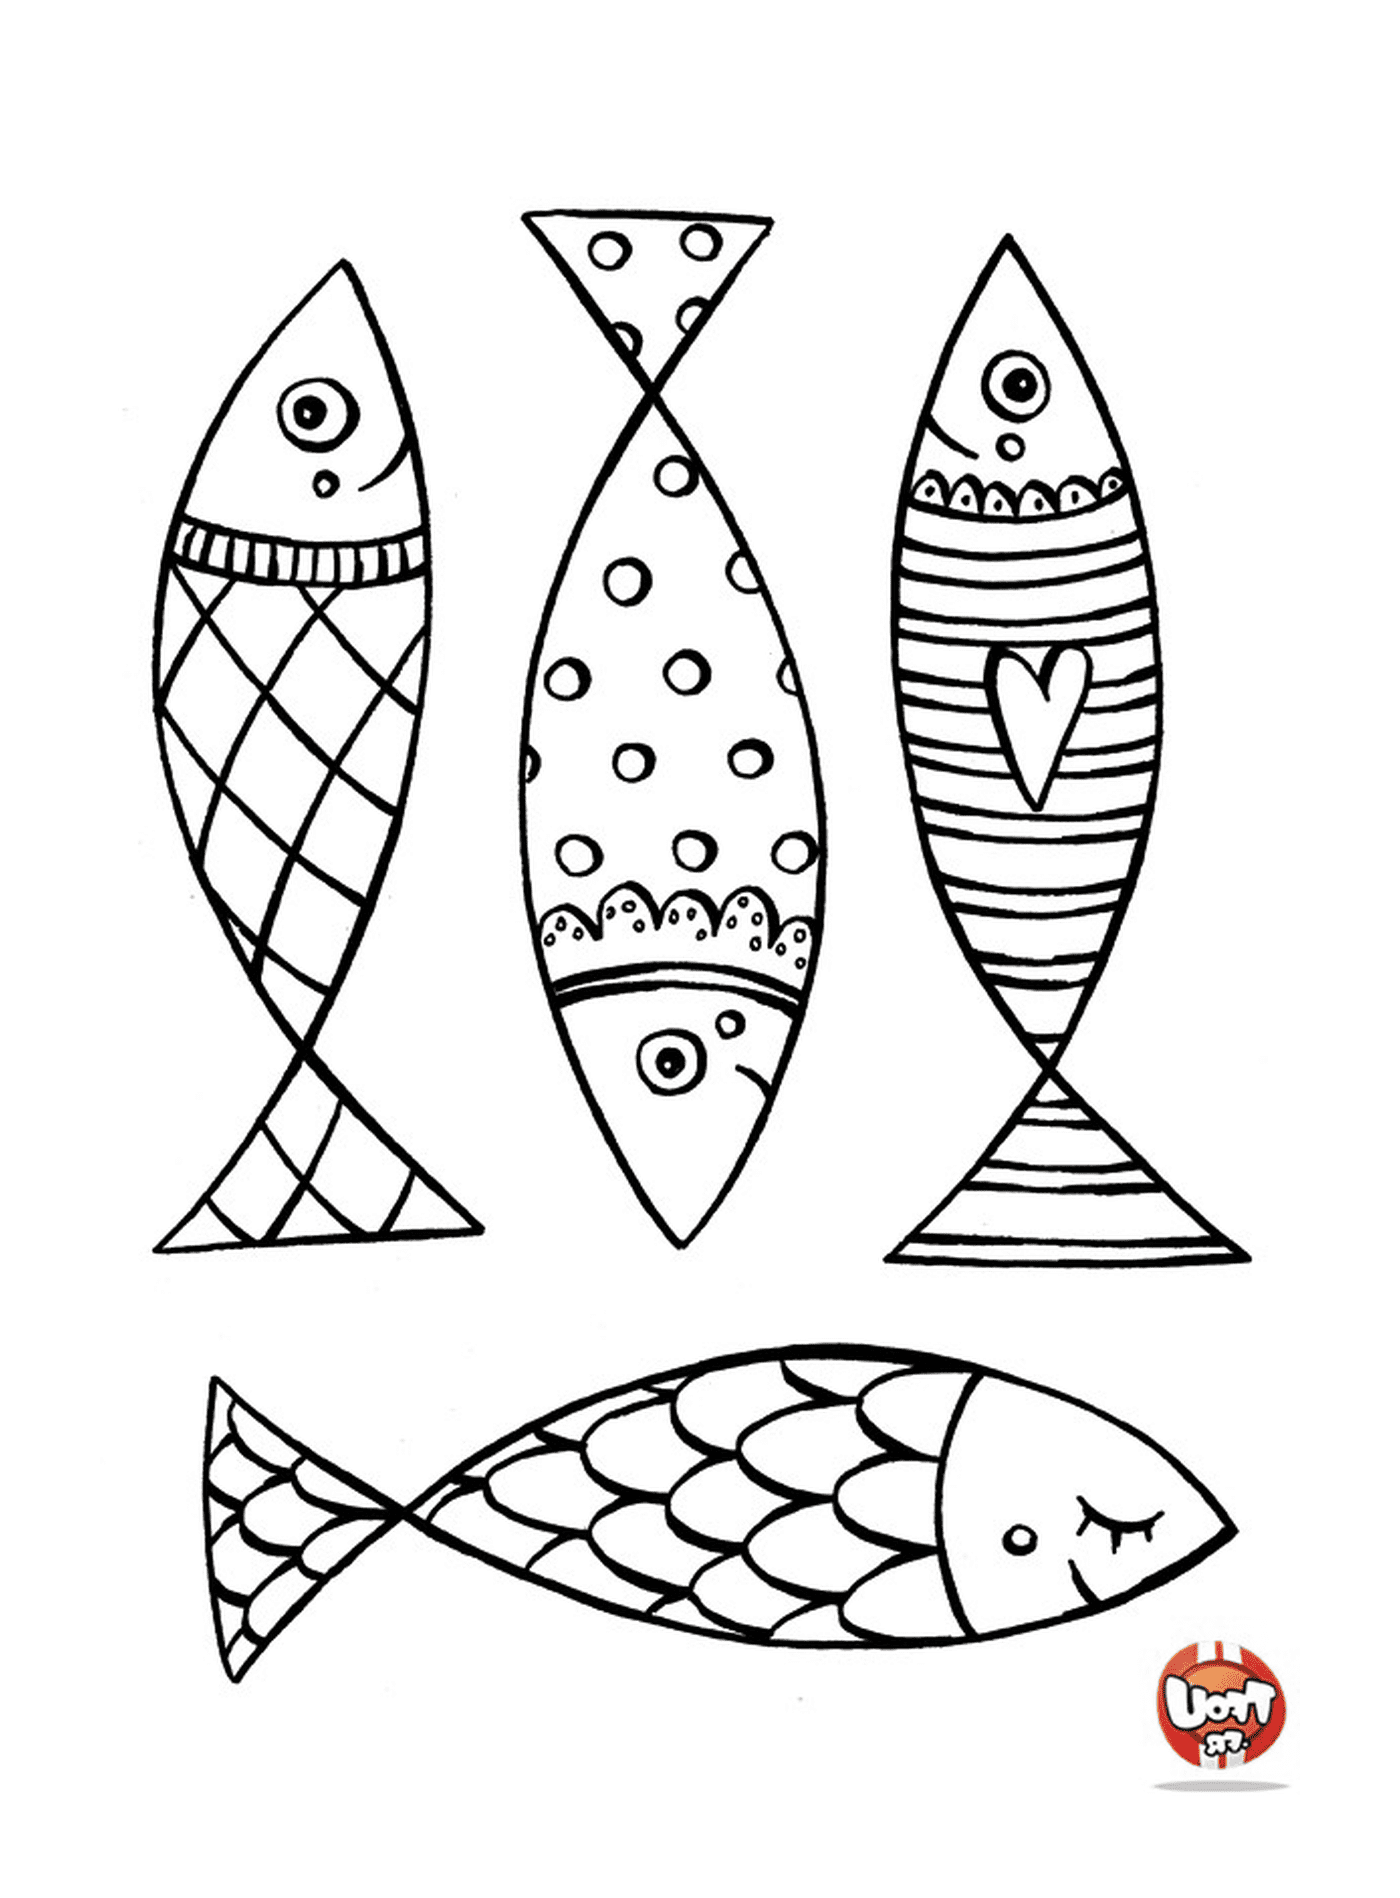  Набор из четырех различных образцов рыбы 